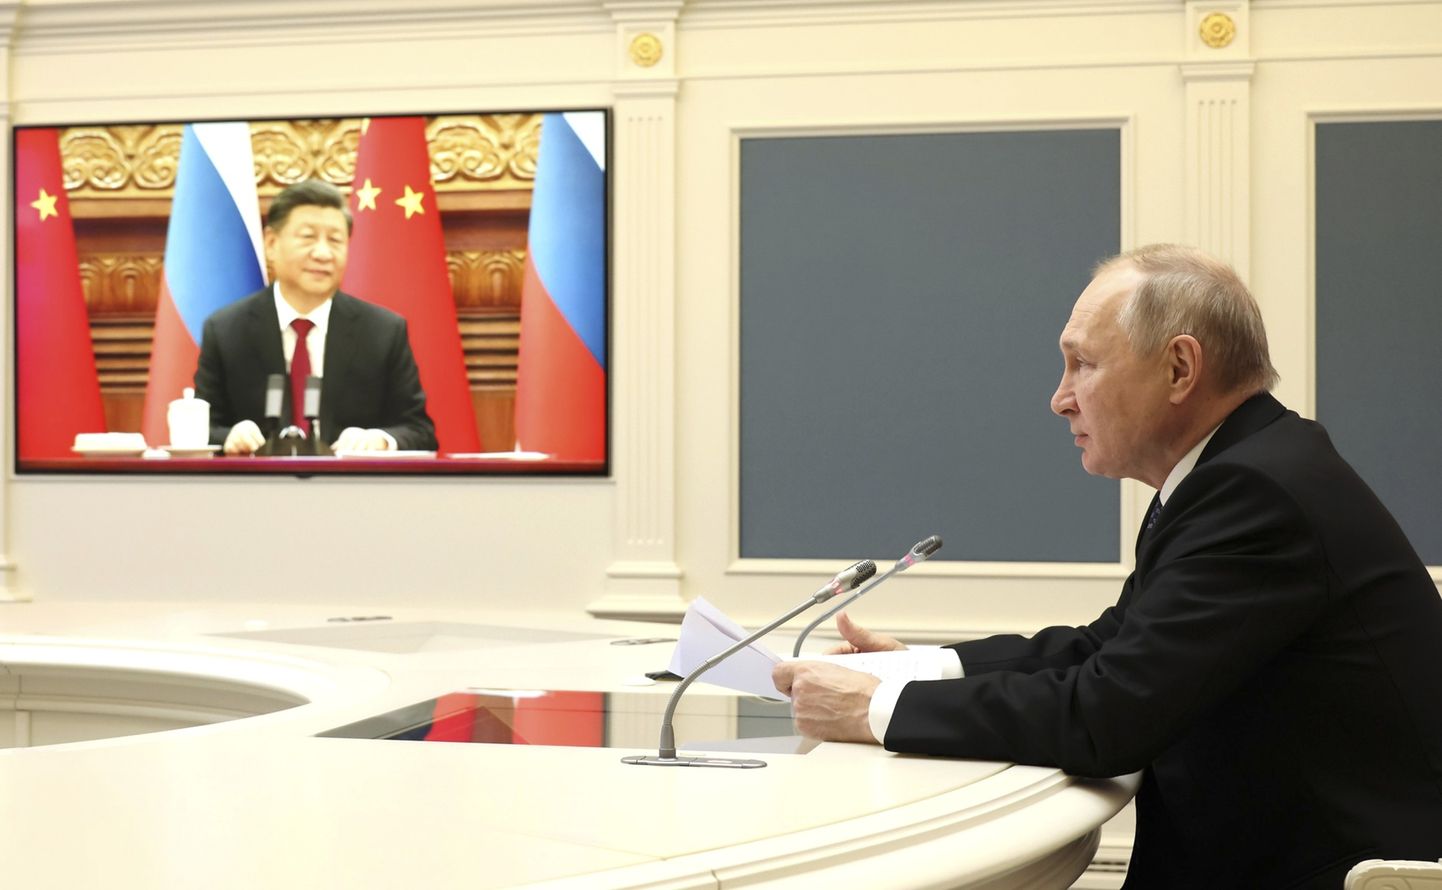 Möödunud aasta lõpus toimunud Venemaa presidendi Vladimir Putini videokohtumine Hiina kolleegi Xi Jinpingiga